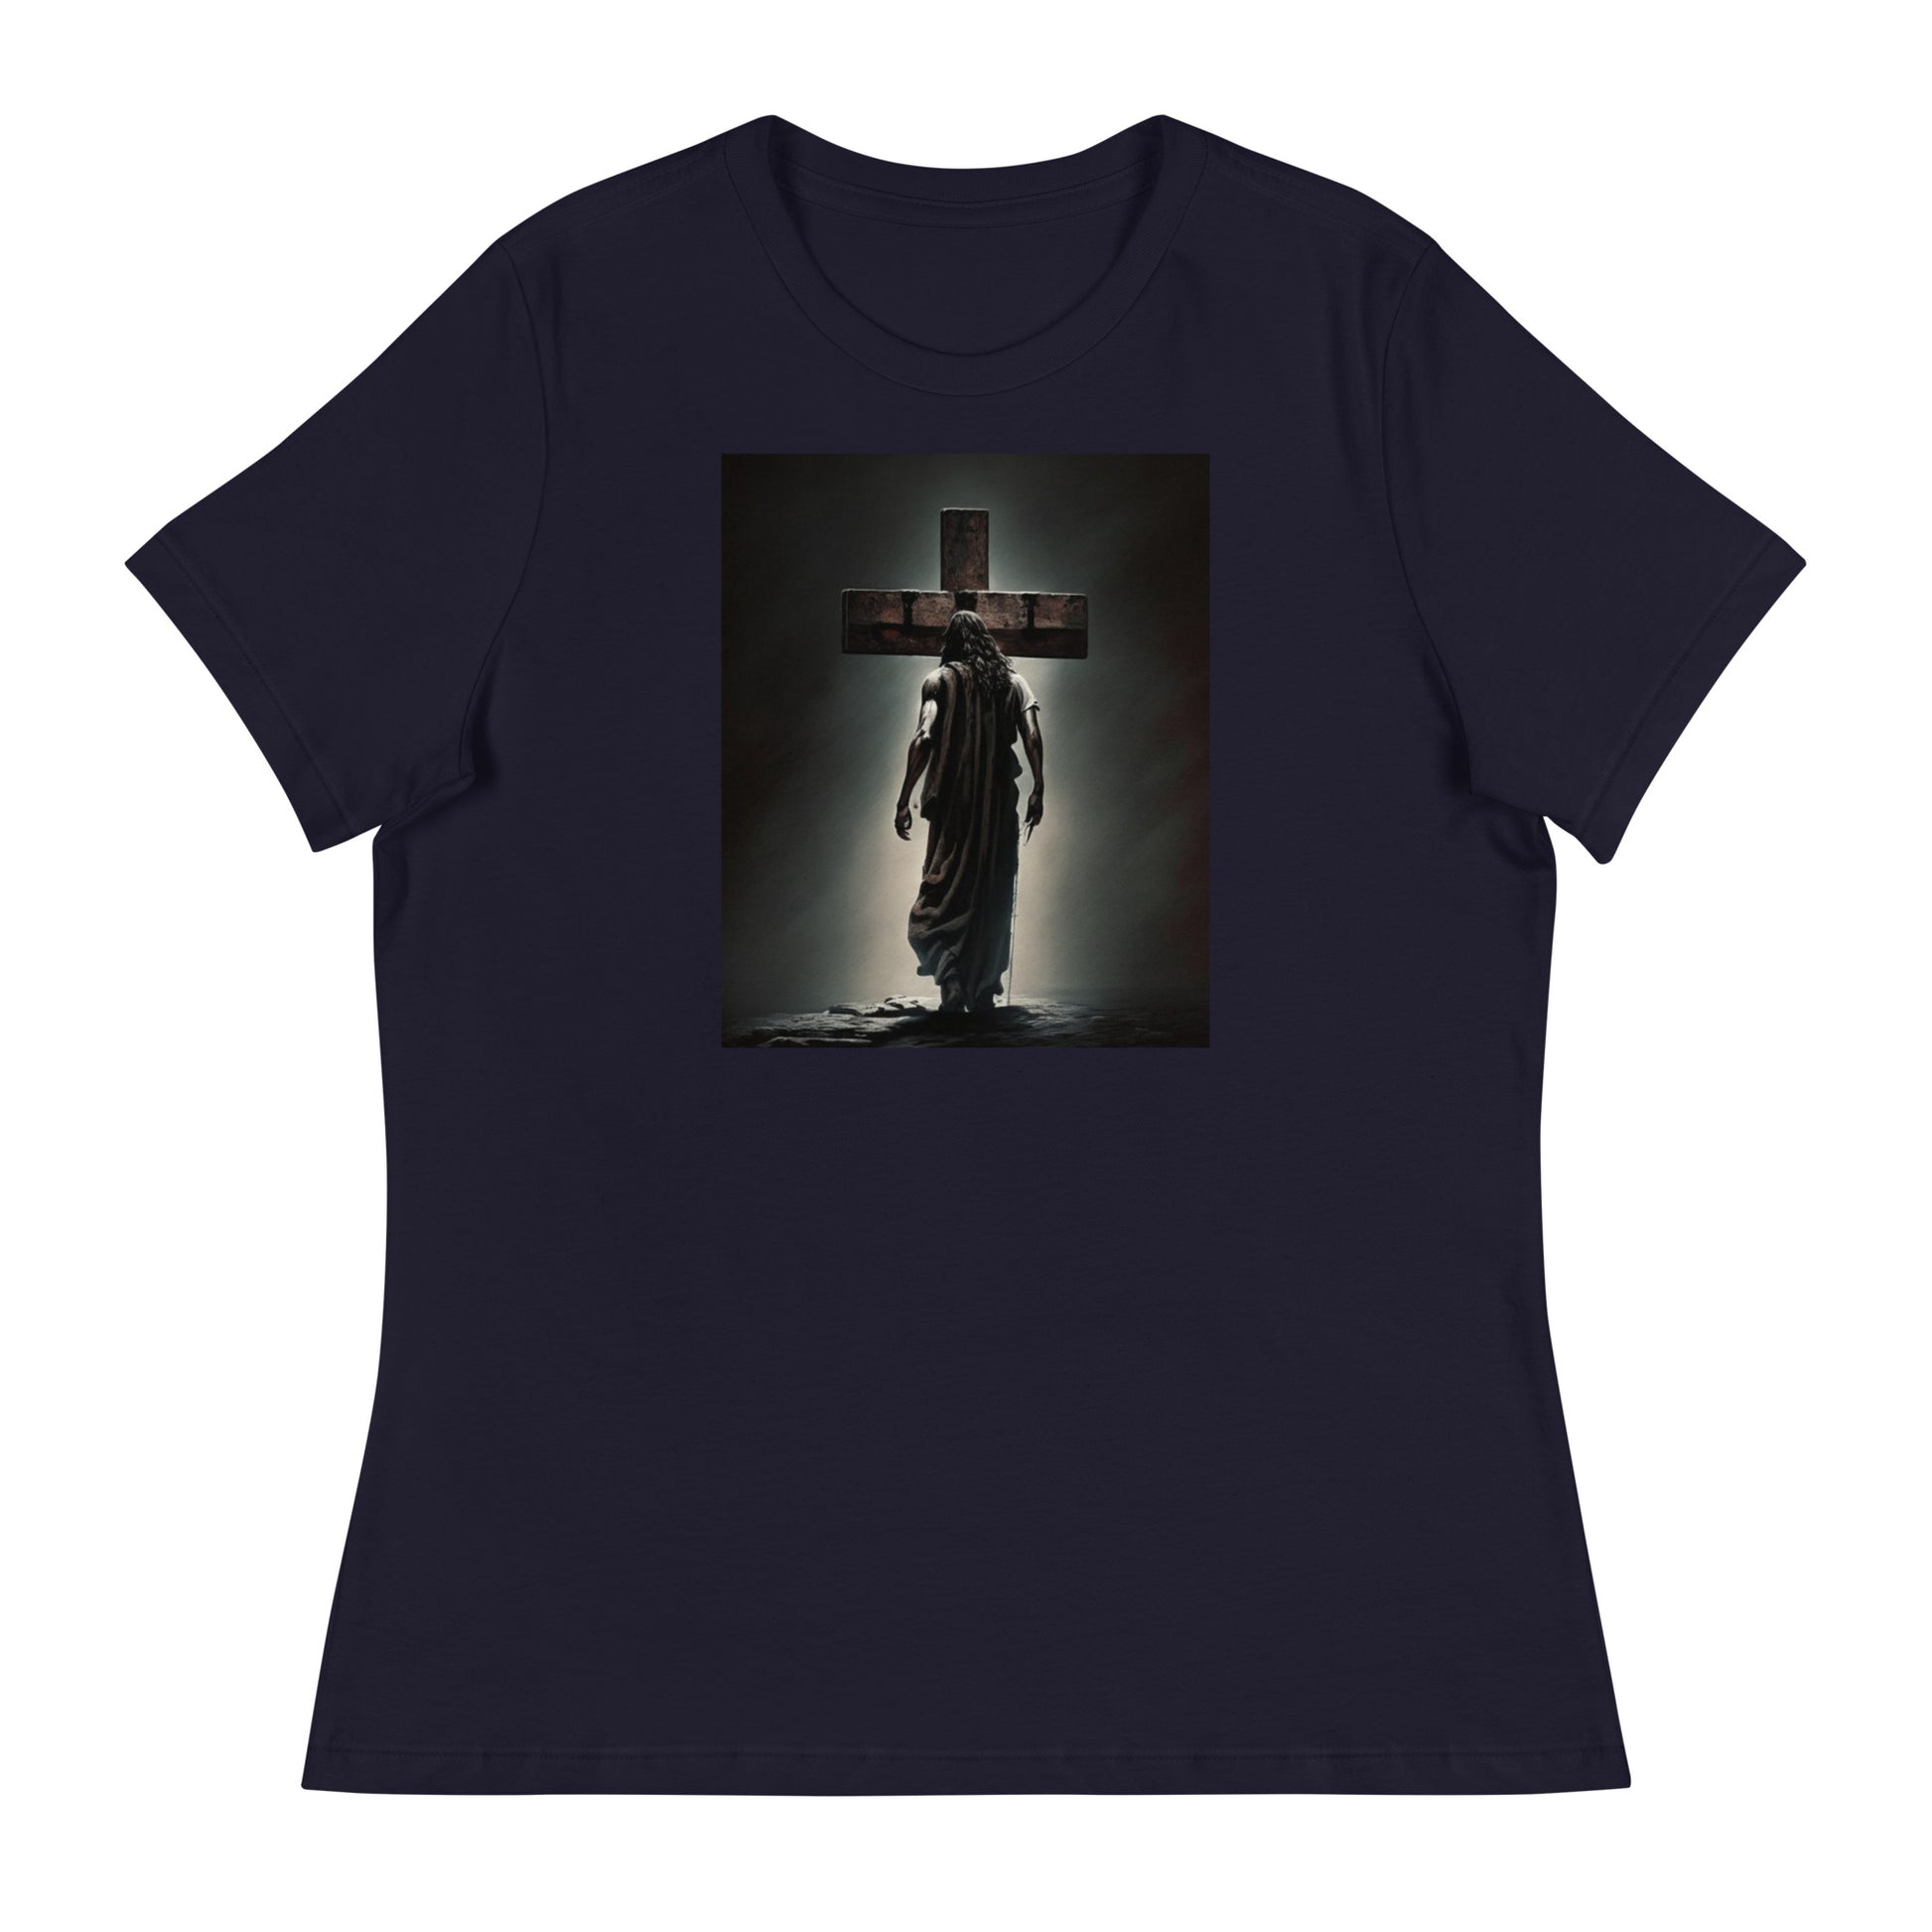 Christ Facing the Cross Christian Women's T-shirt Navy